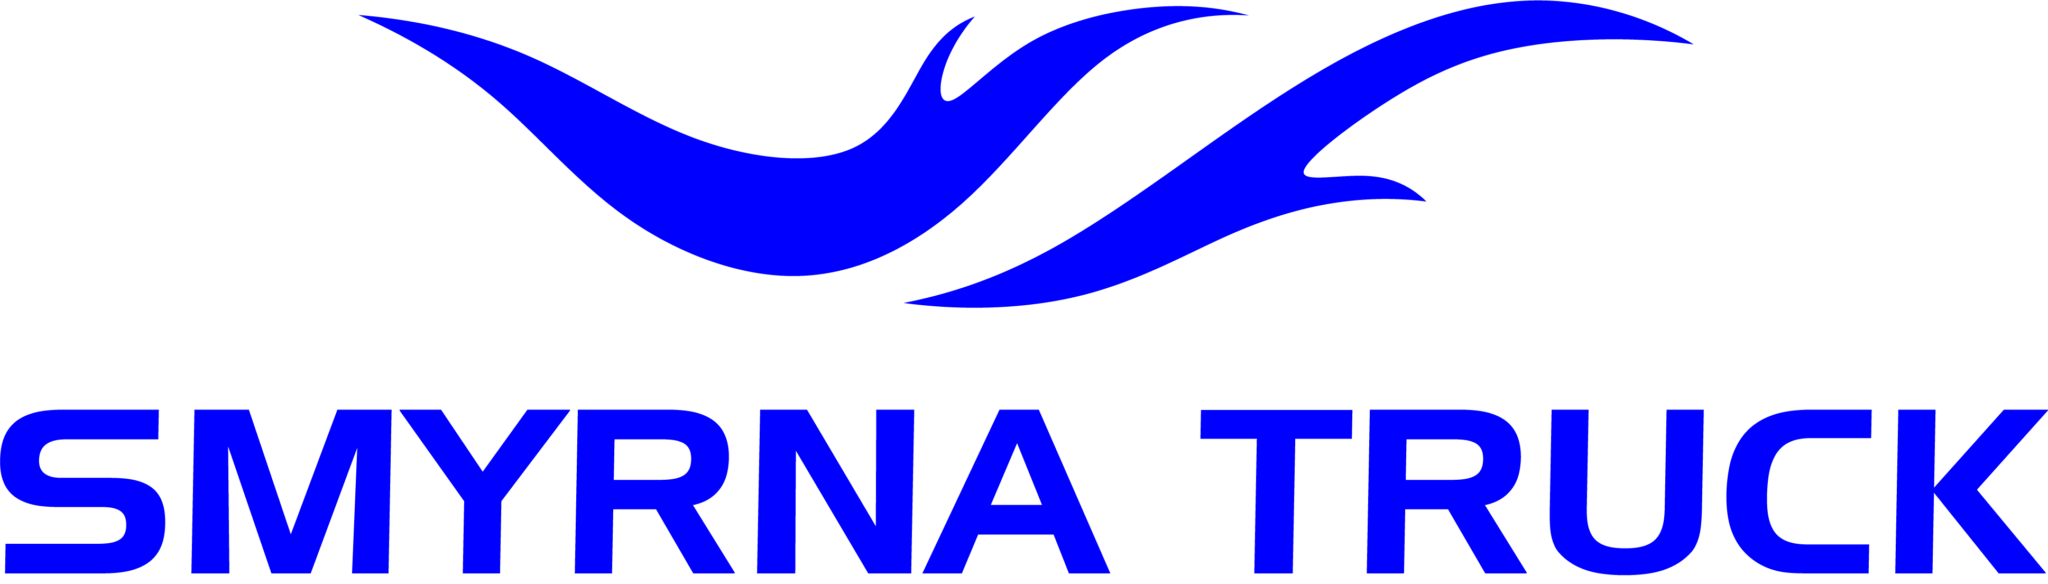 Smyrna Truck logo image